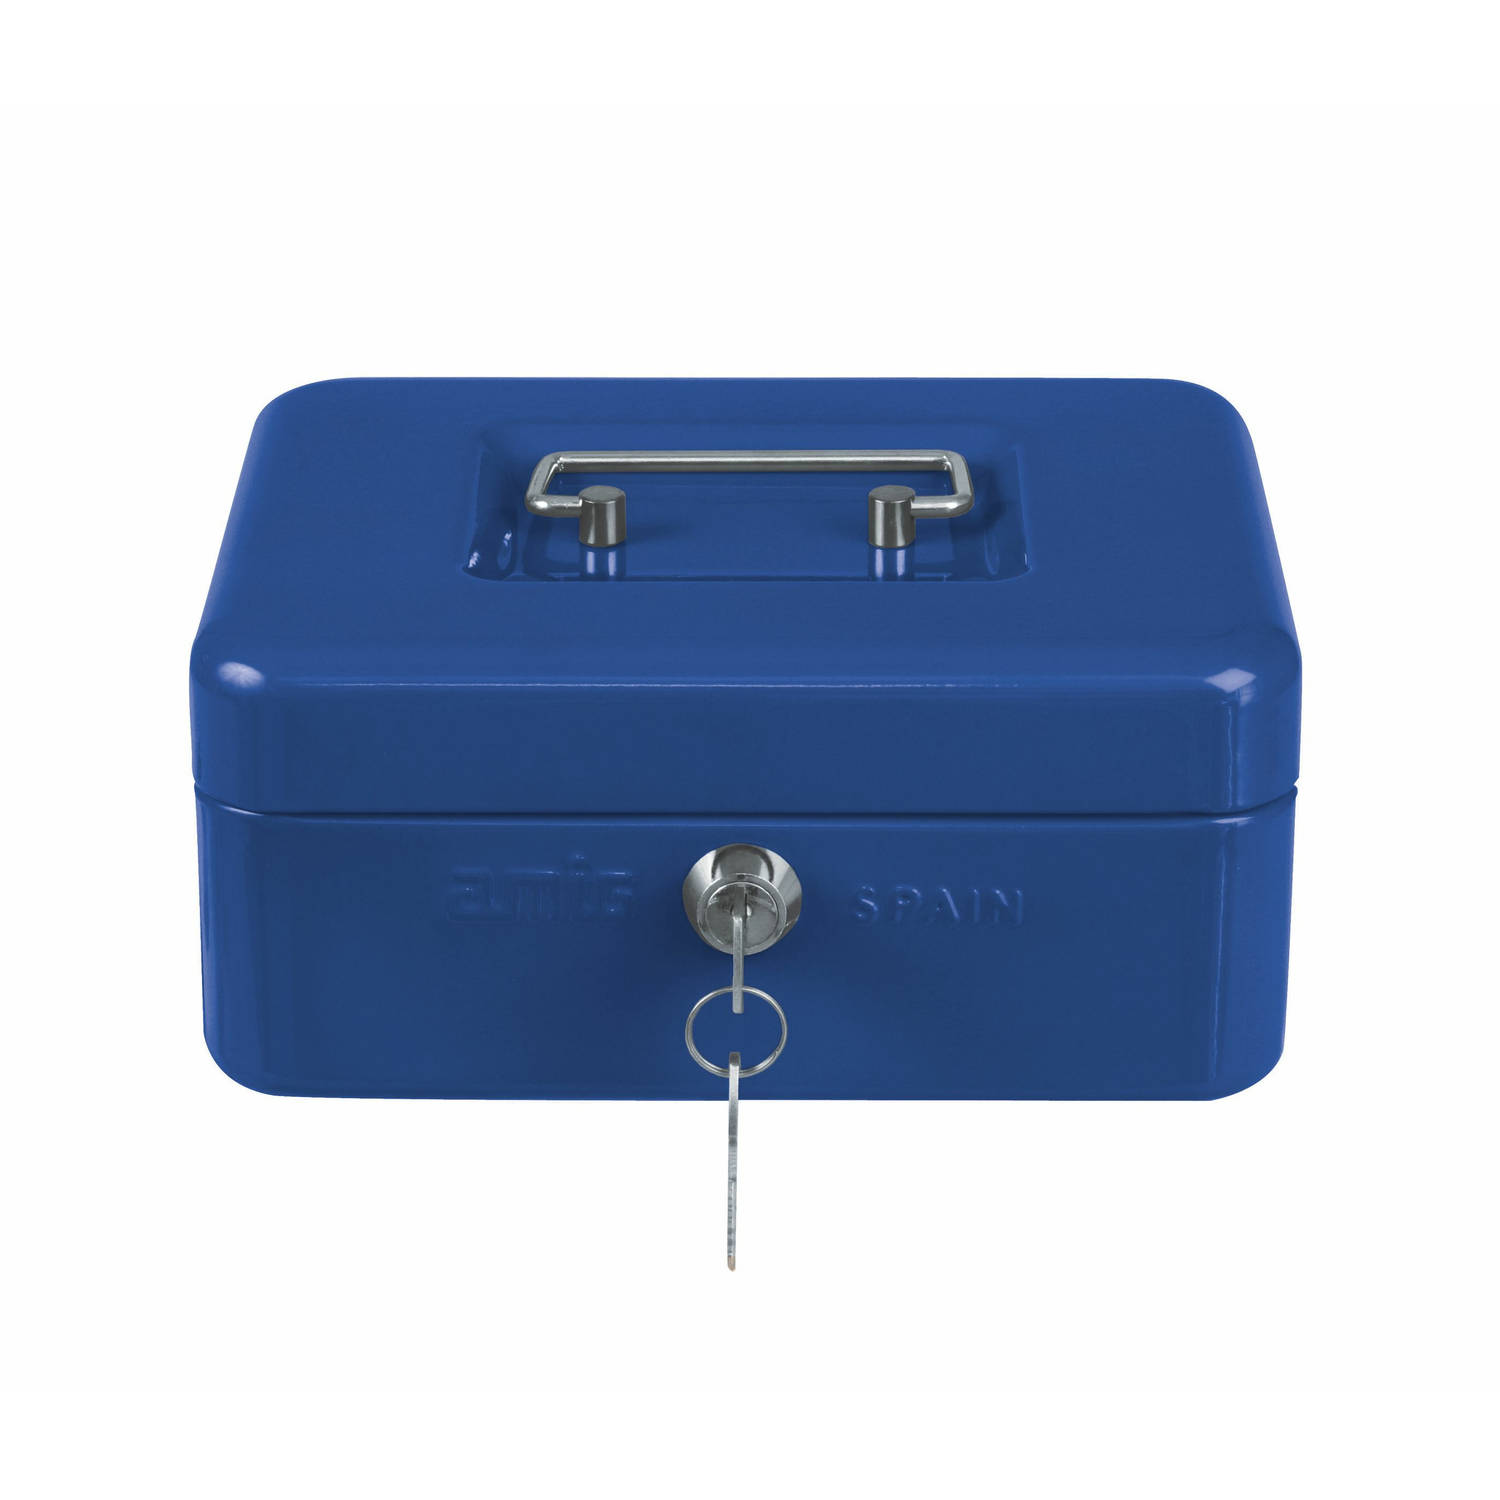 AMIG Geldkistje met 2 sleutels - blauw - staal - muntbakje - 20 x 16 x 9 cm - inbraakbeveiliging